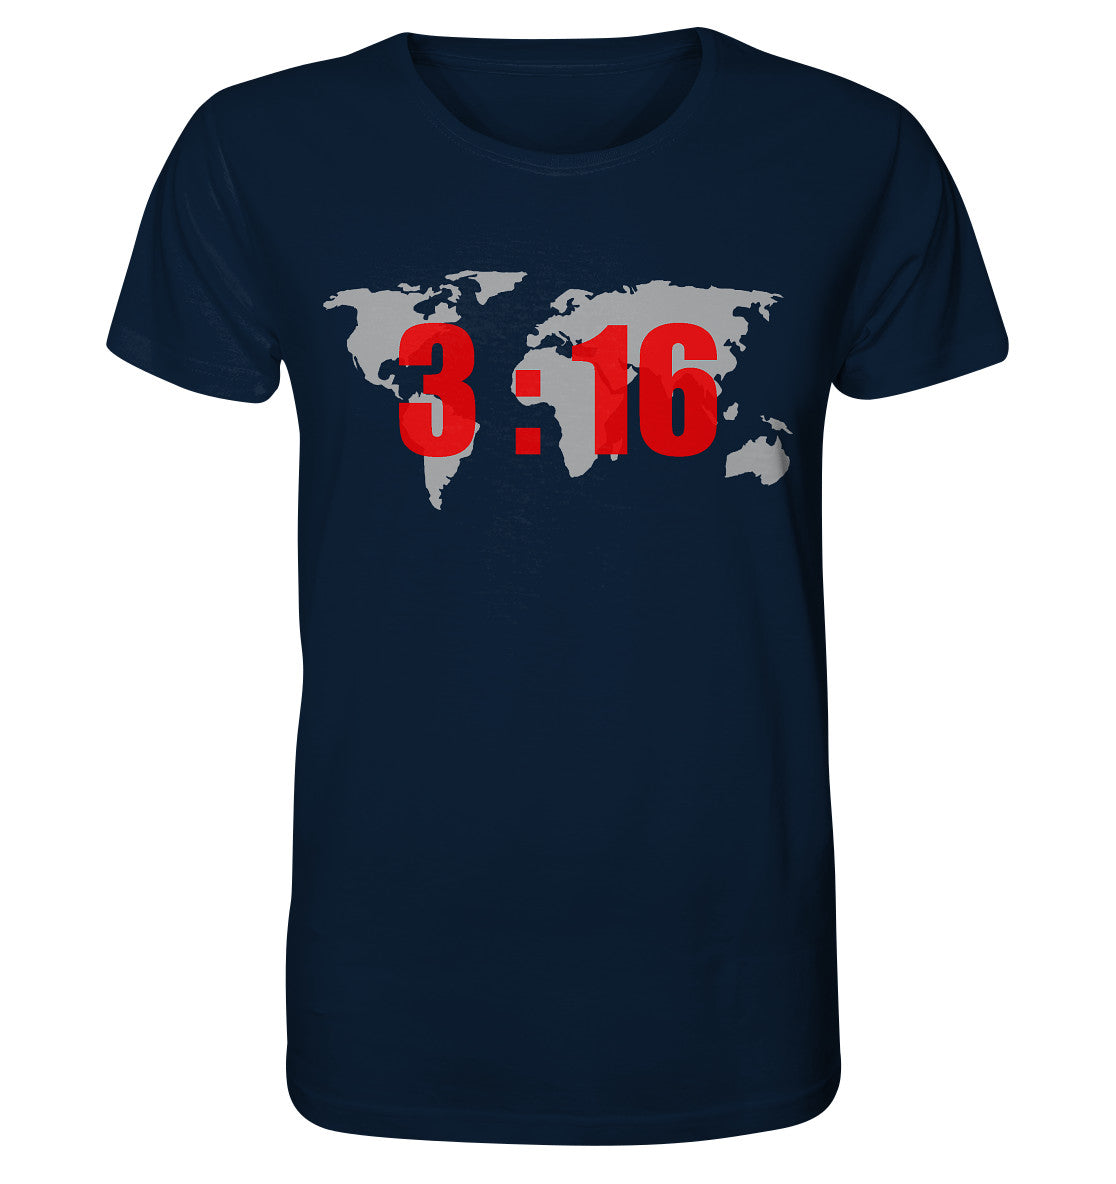 Joh 3,16 - World - Organic Shirt